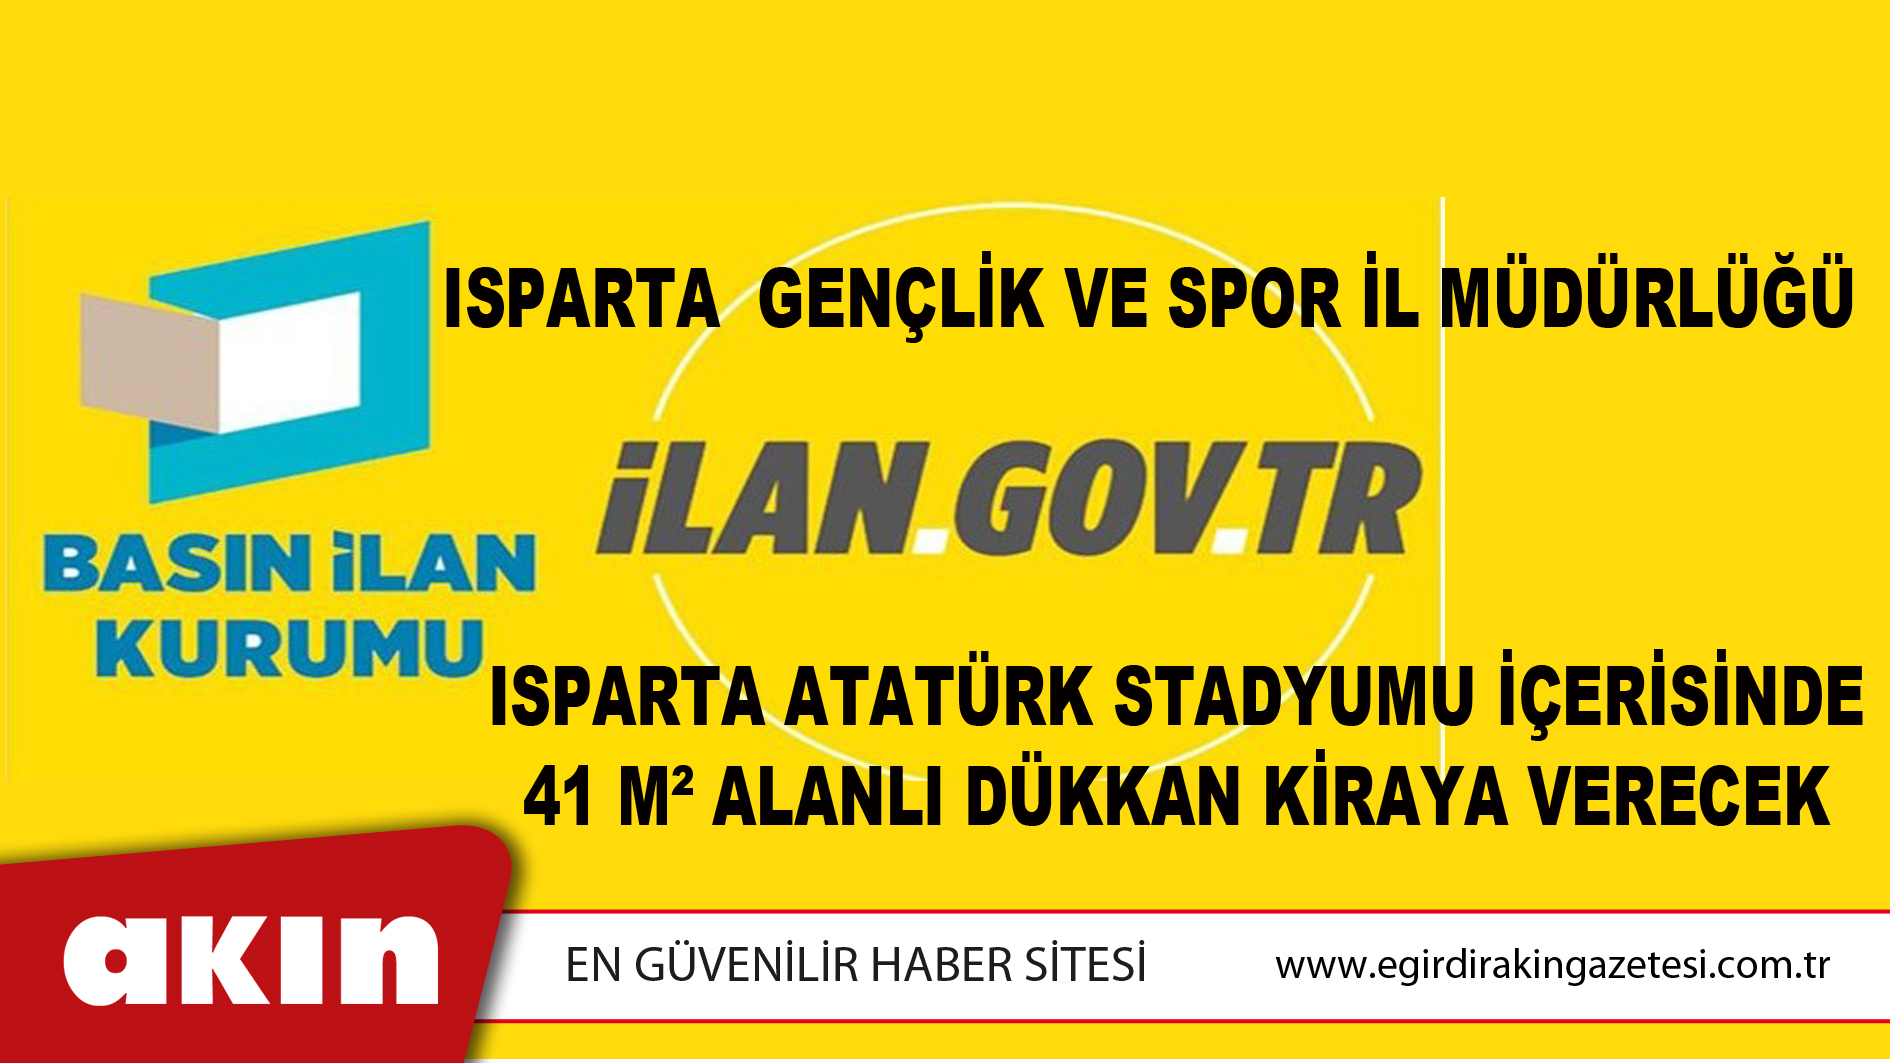 Isparta  Gençlik Ve Spor İl Müdürlüğü Isparta Atatürk Stadyumu İçerisinde 41 M² Alanlı Dükkan Kiraya Verecek